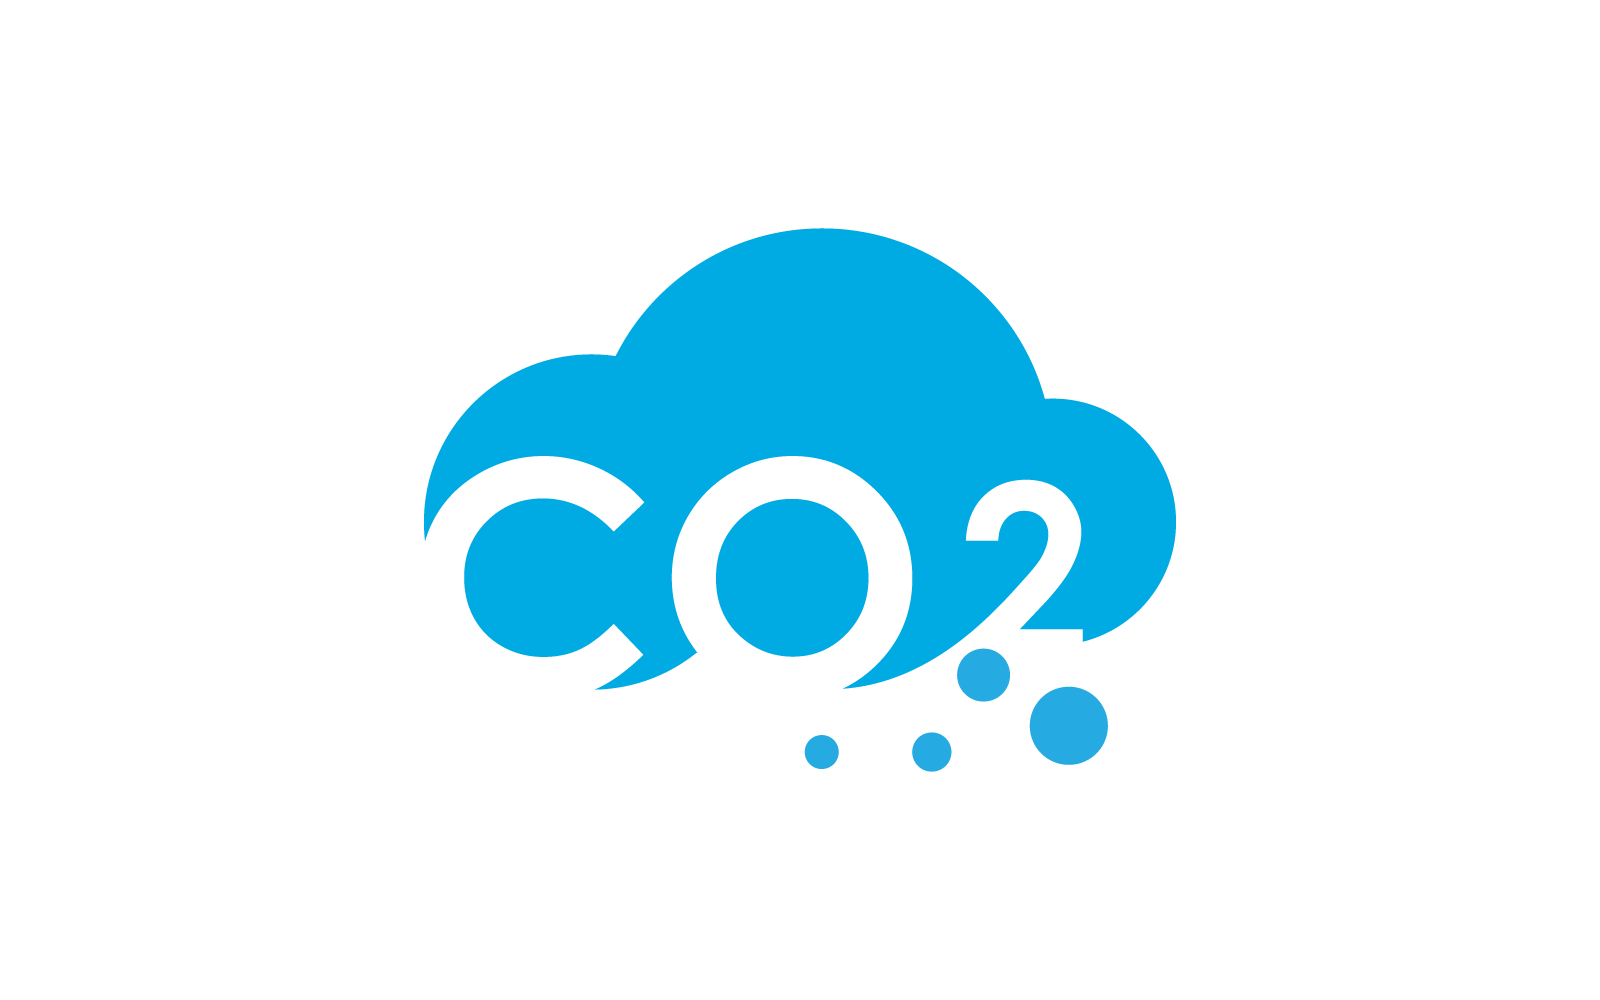 Co2 Carbon dioxide logo illustration design